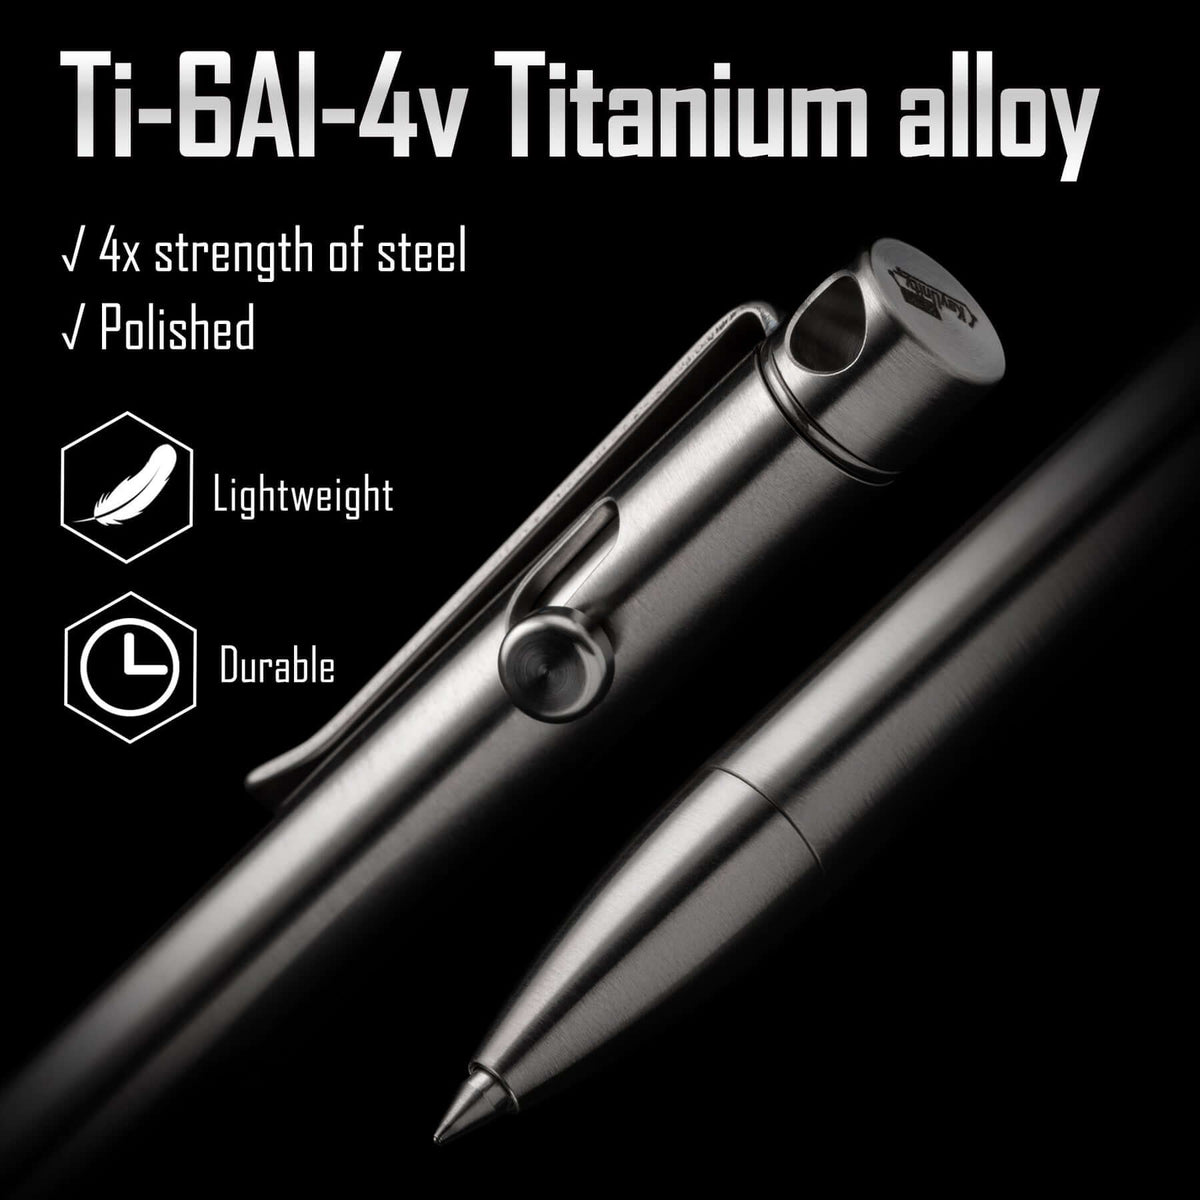 KP01 Titanium Alloy Bolt Action Pen